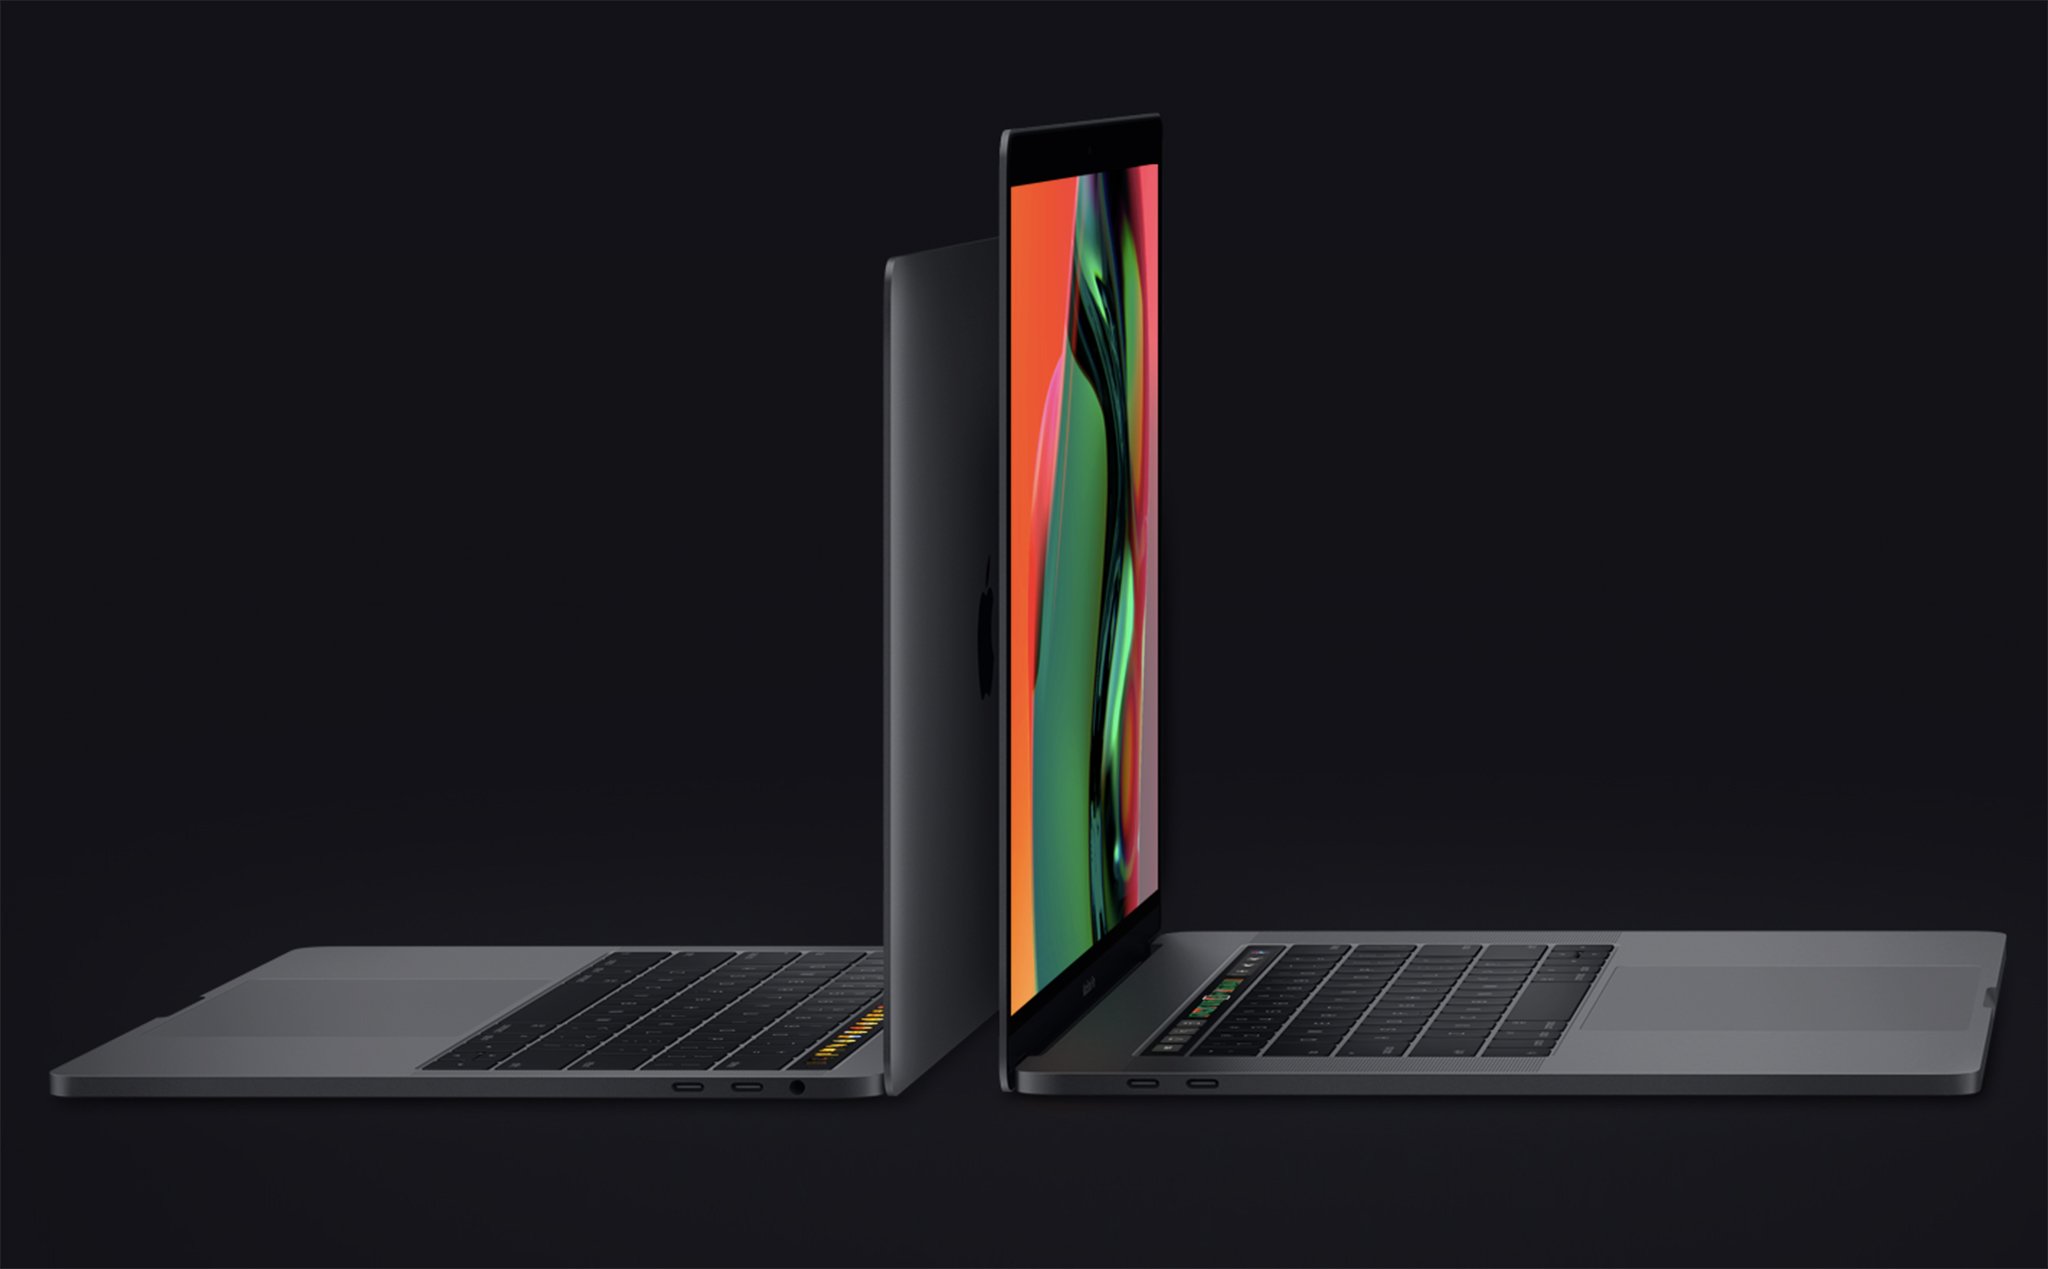 Macbook Pro 2018: Core i7 hoặc i9 6 nhân, 32GB RAM, màn hình True Tone, 6699$ cho bản cao nhất